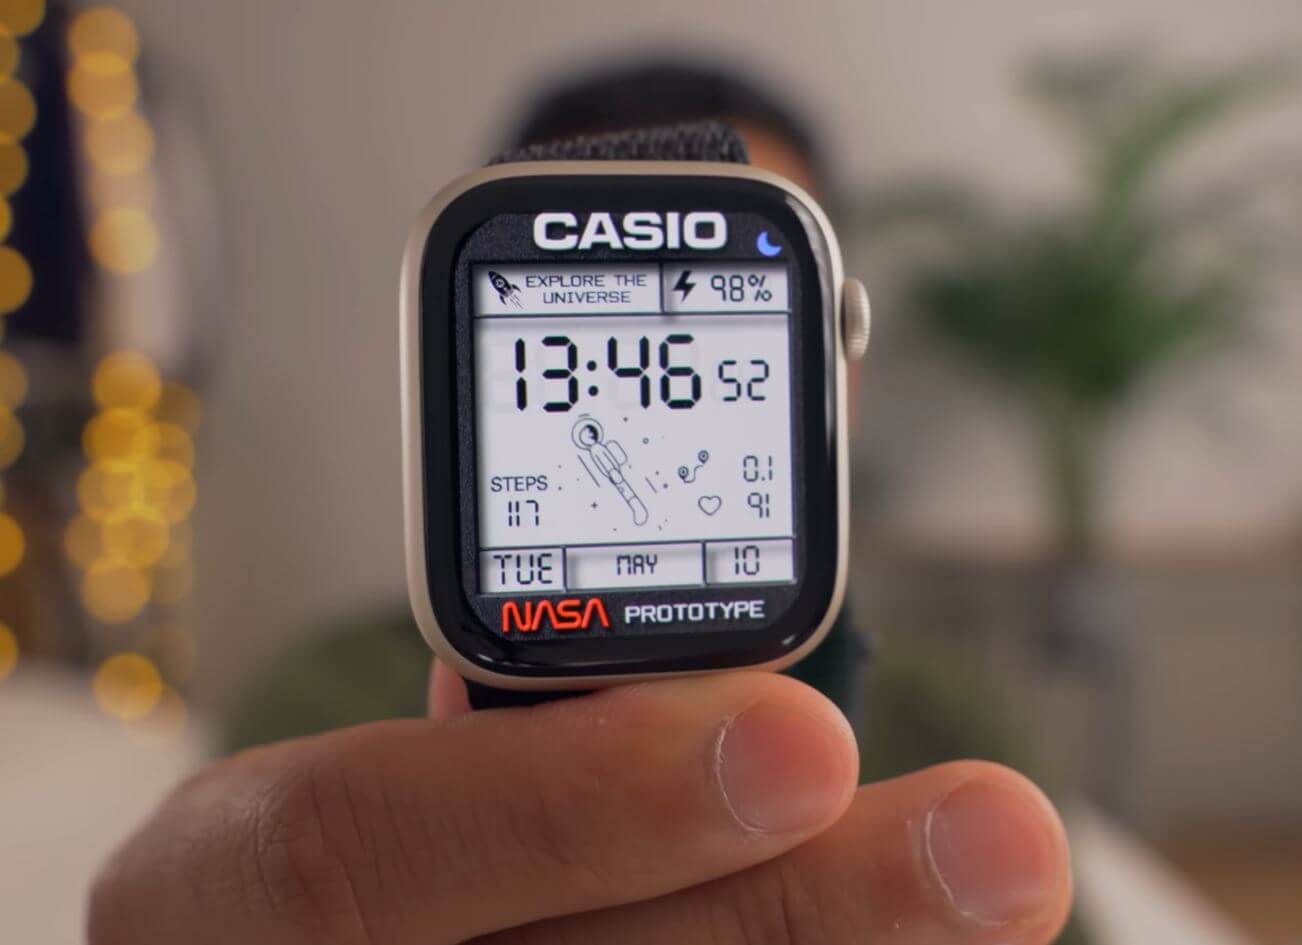 Как установить кастомные циферблаты на Apple Watch. Попробуйте этот отличный способ кастомизации Apple Watch! Фото.